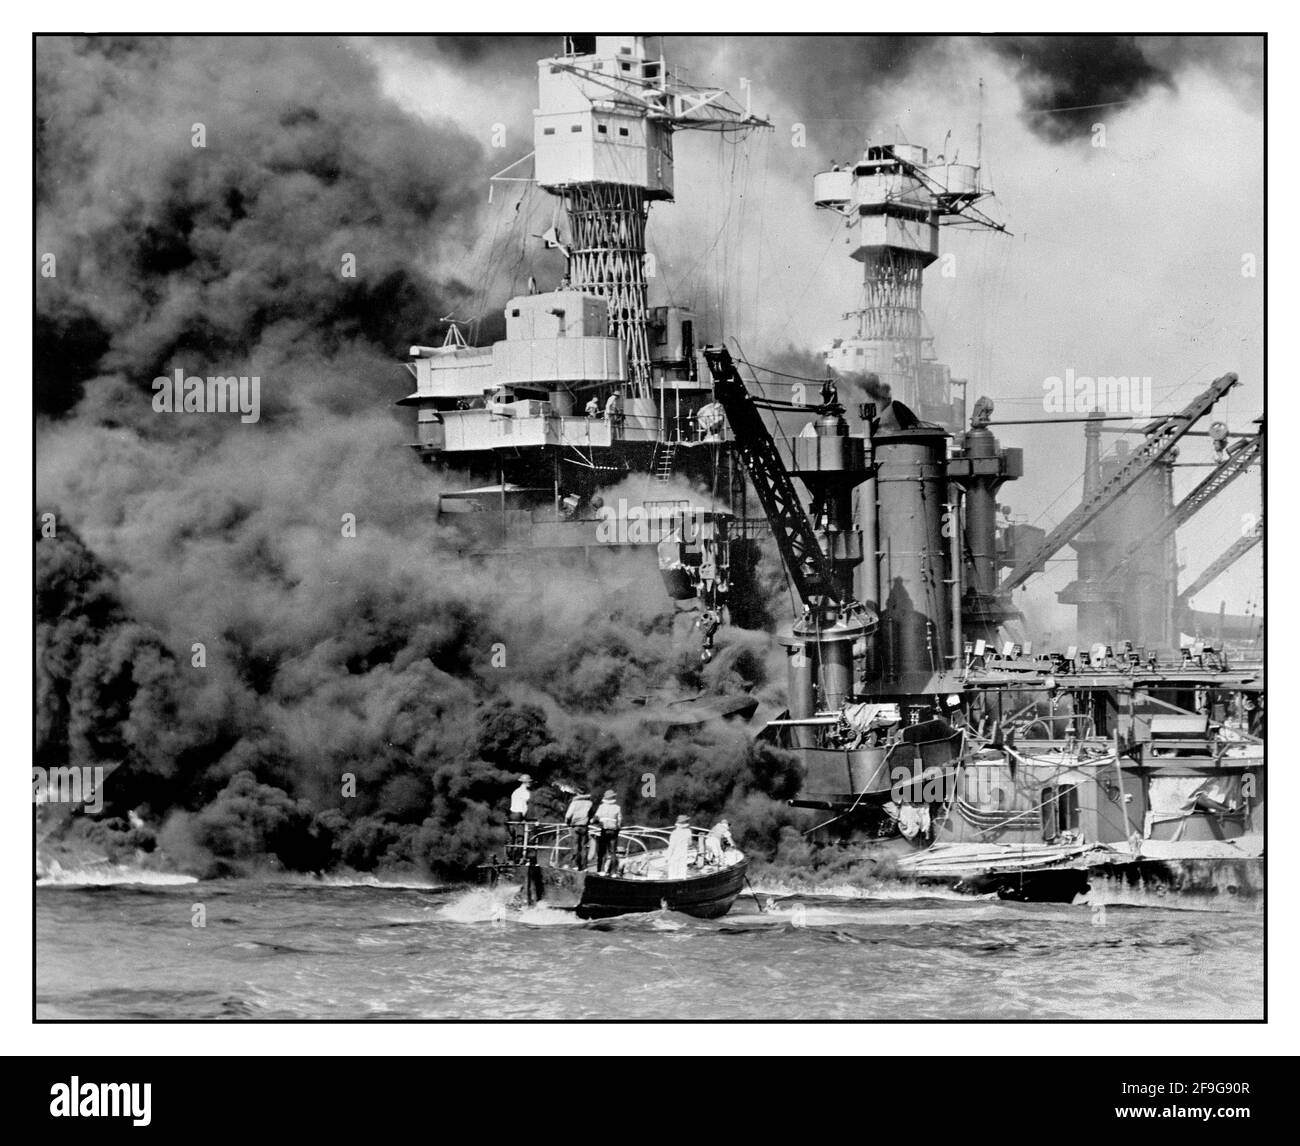 ATTACCO DI PEARL HARBOR WW2 7 dicembre 1941 una piccola barca salva un marinaio dalla USS West Virginia che brucia in primo piano a Pearl Harbor, Hawaii, dopo che gli aerei giapponesi hanno attaccato l'installazione militare. . Seconda guerra mondiale guerra del Pacifico aggressione giapponese Foto Stock